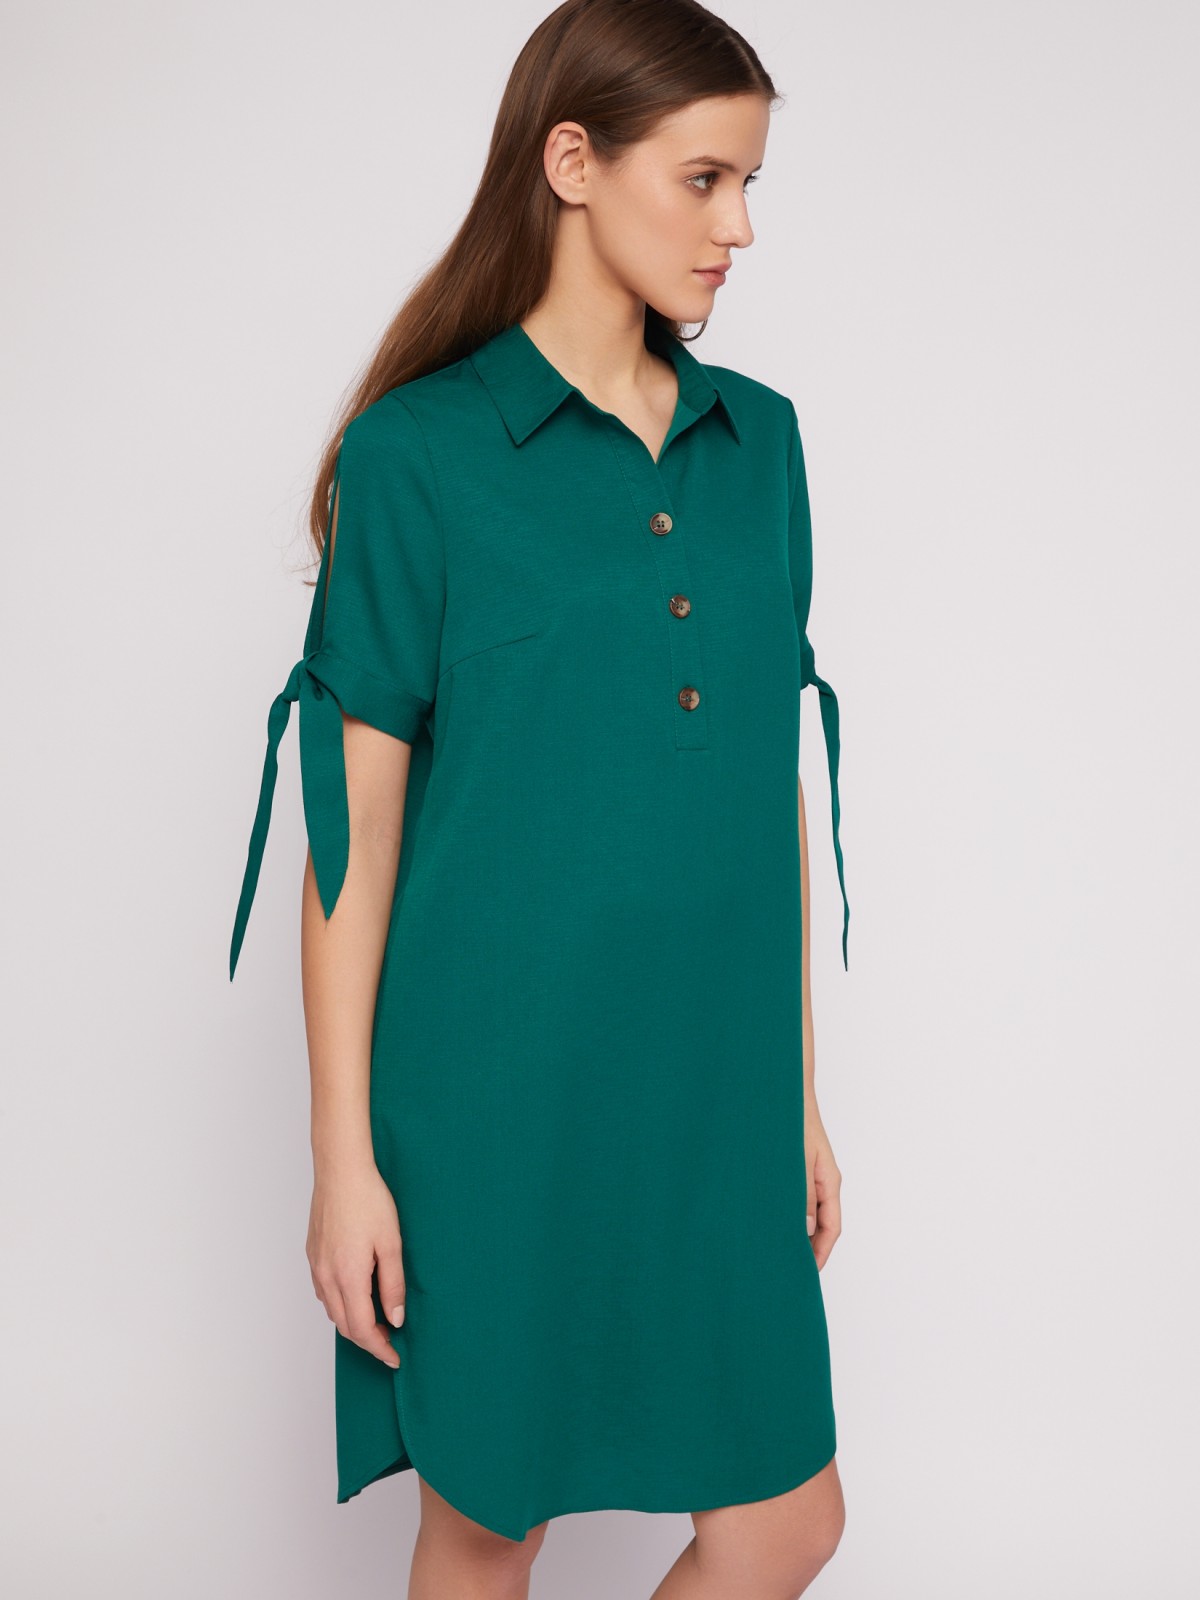 Платье-рубашка мини с акцентом на рукавах zolla 024218239333, цвет темно-зеленый, размер XXXL